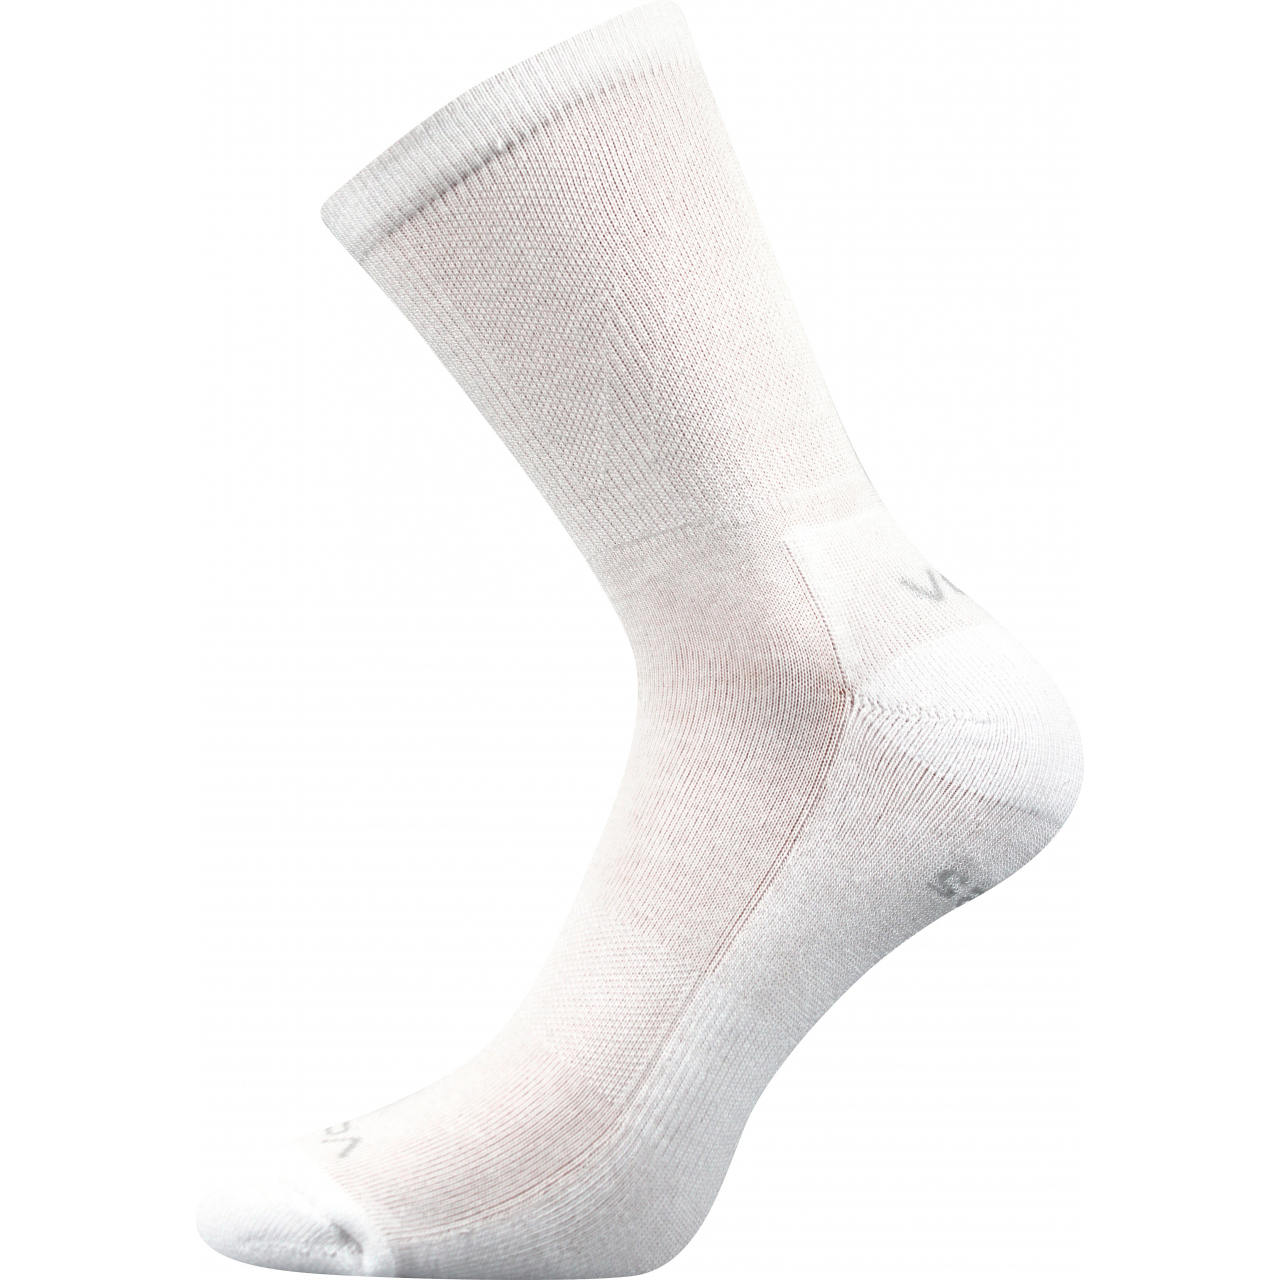 Ponožky sportovní Voxx Kinetic - bílé, 35-38